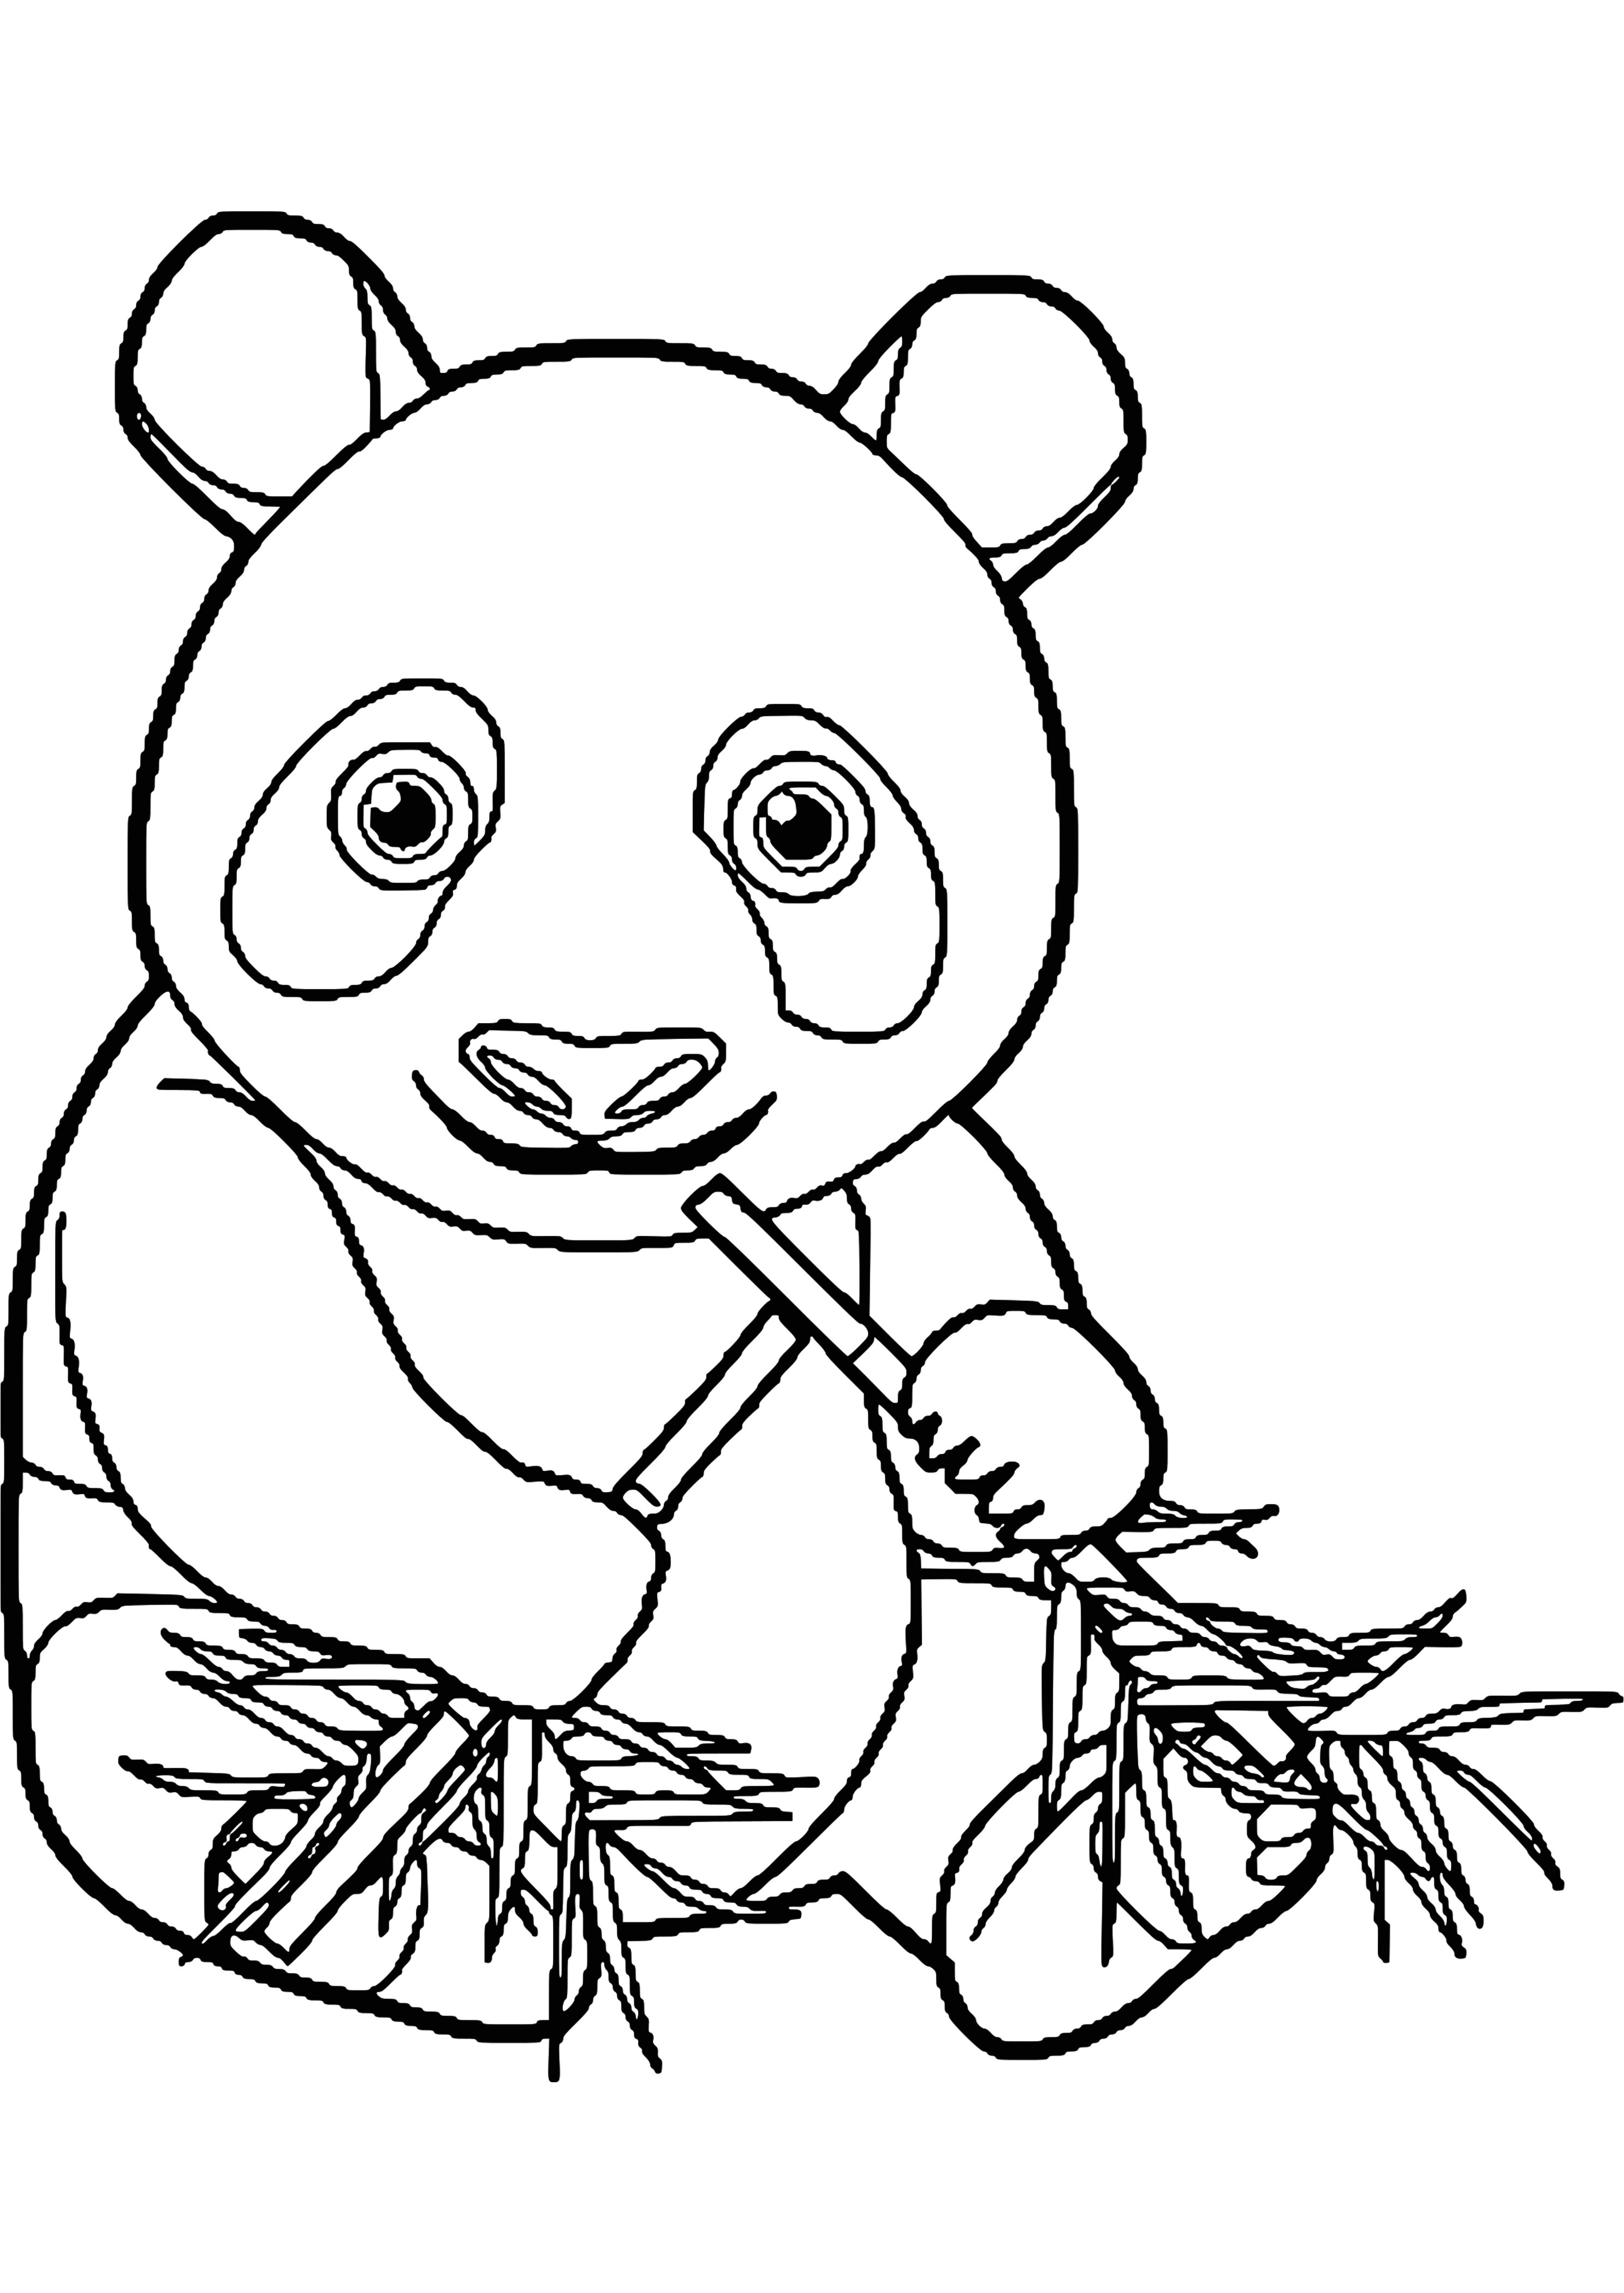 Dessin à Colorier Et à Imprimer Élégant Images Coloriage Panda A Imprimer Gratuit S Dessin Colorier